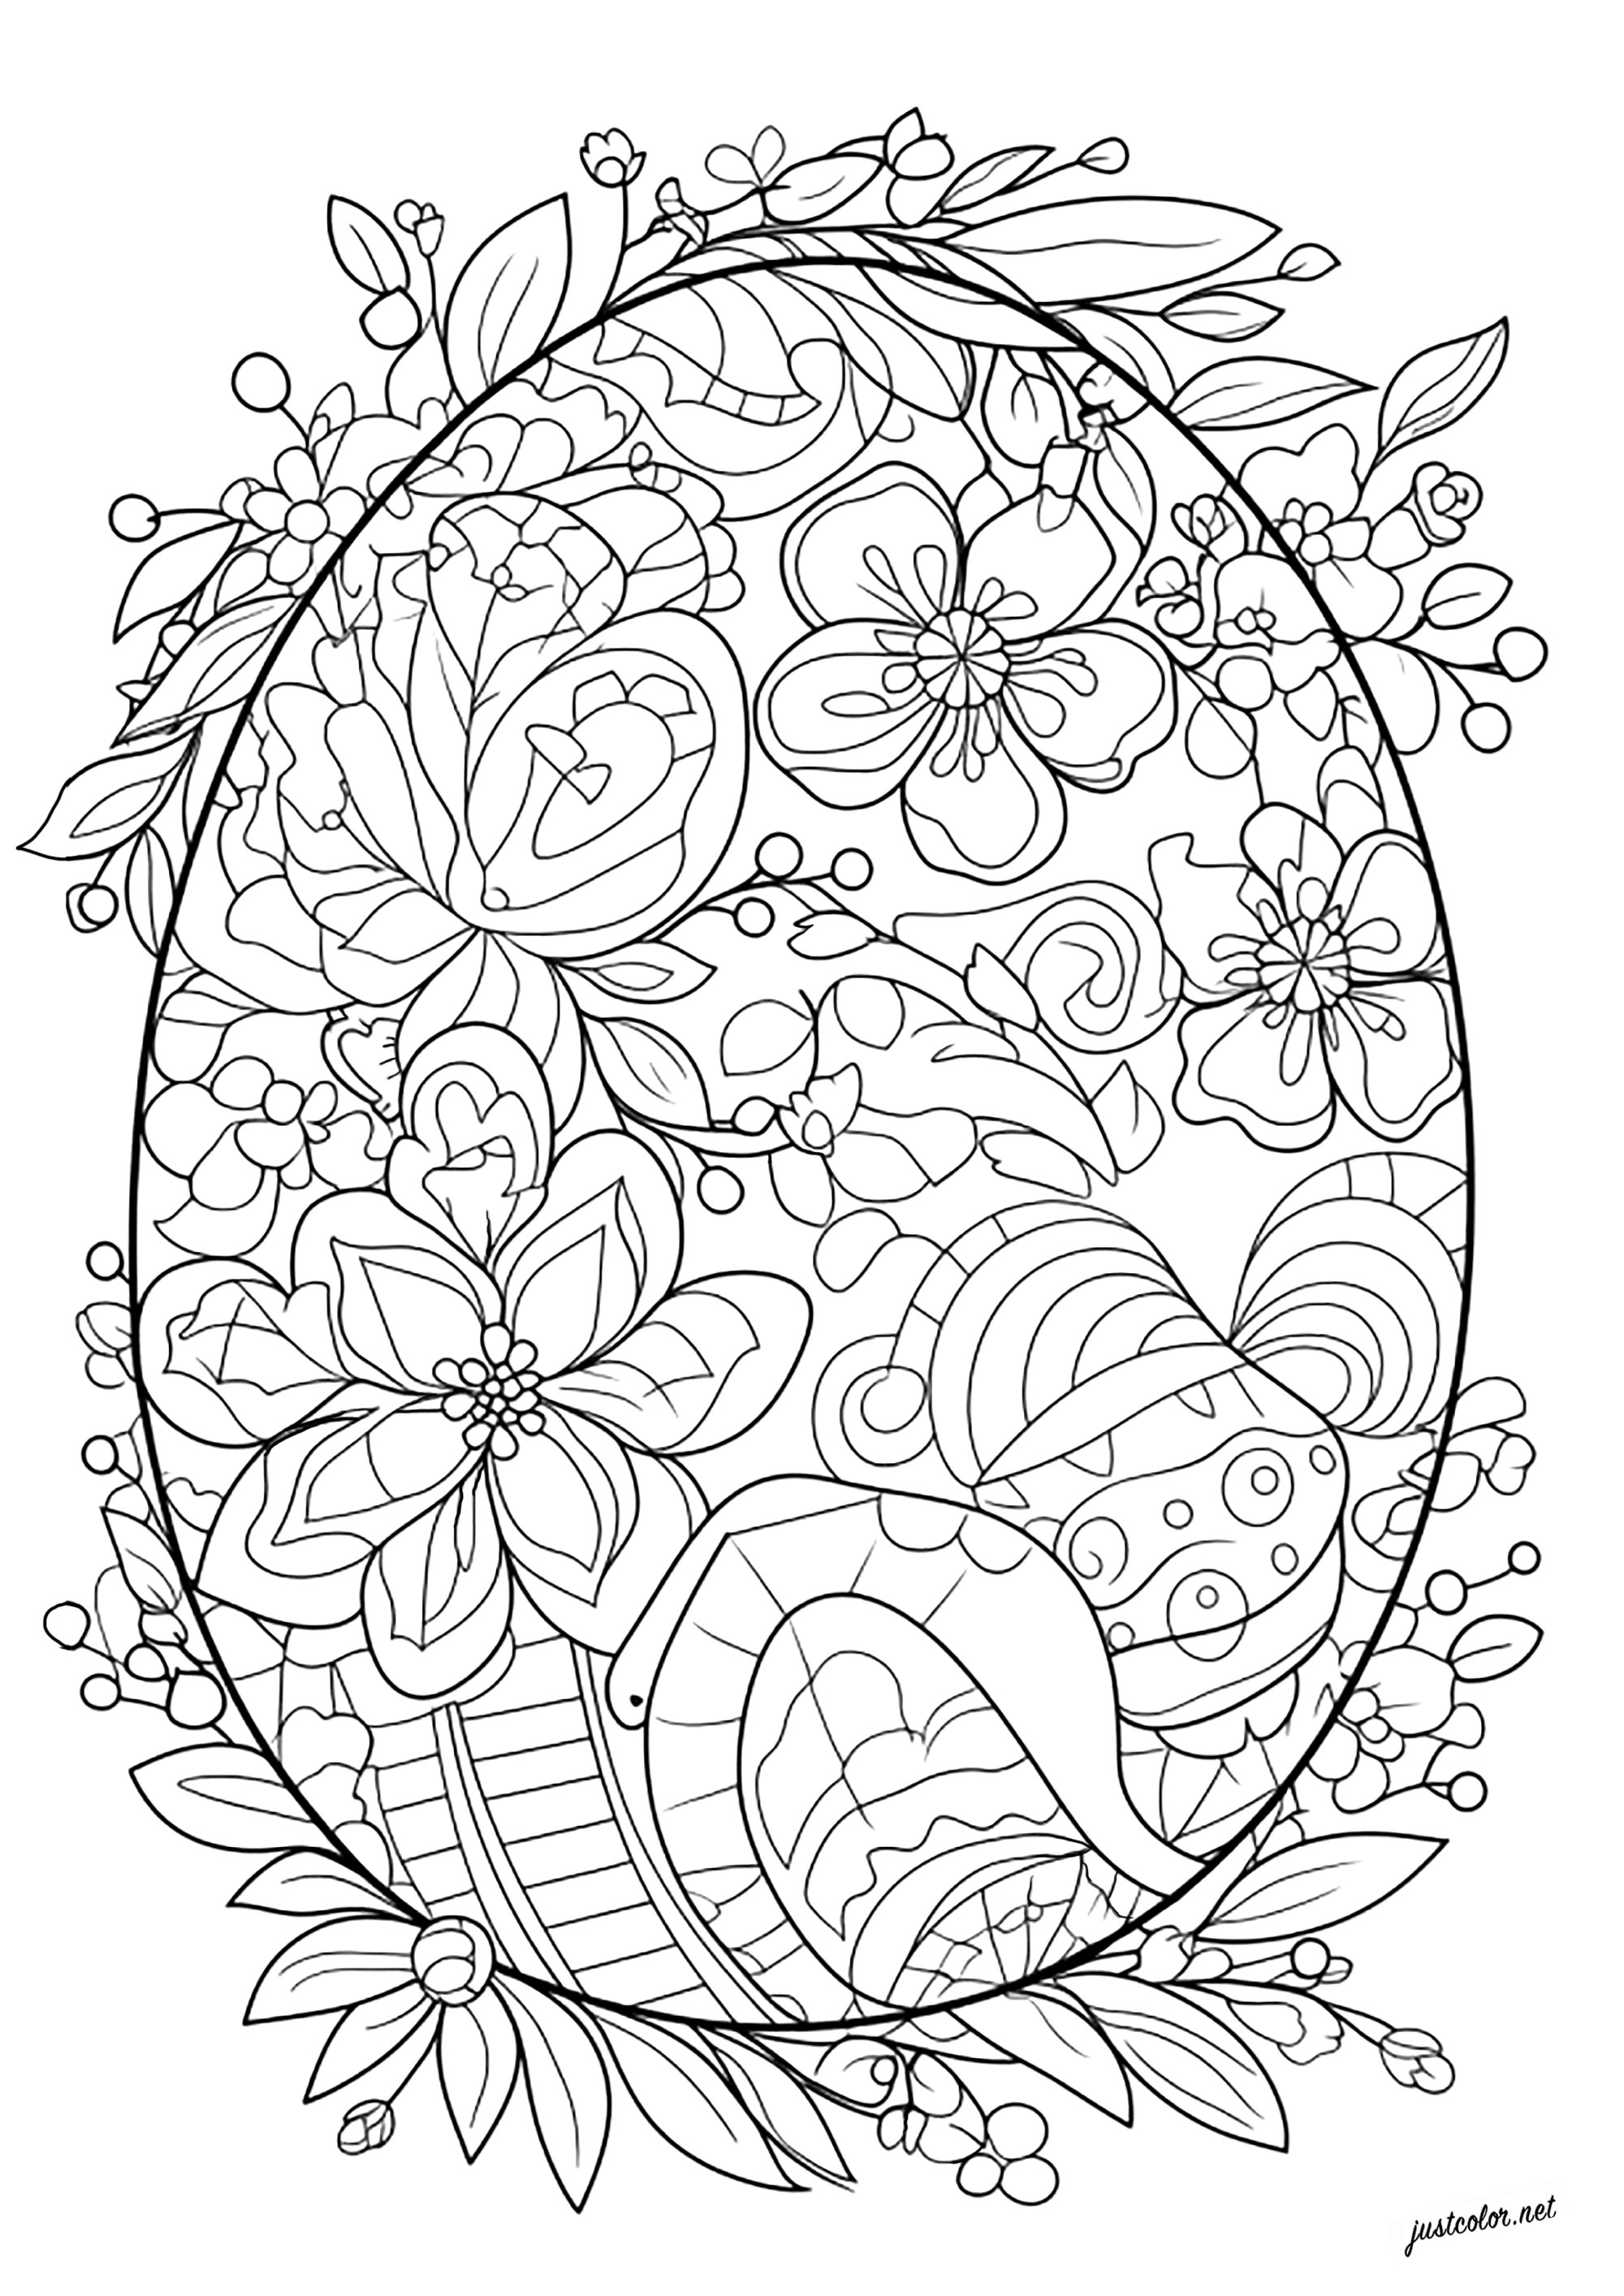 Coloriage unique d'un oeuf de Pâques. Nombreuses fleurs et feuilles à colorier dans ce bel oeuf de Pâques, Artiste : IAsabelle